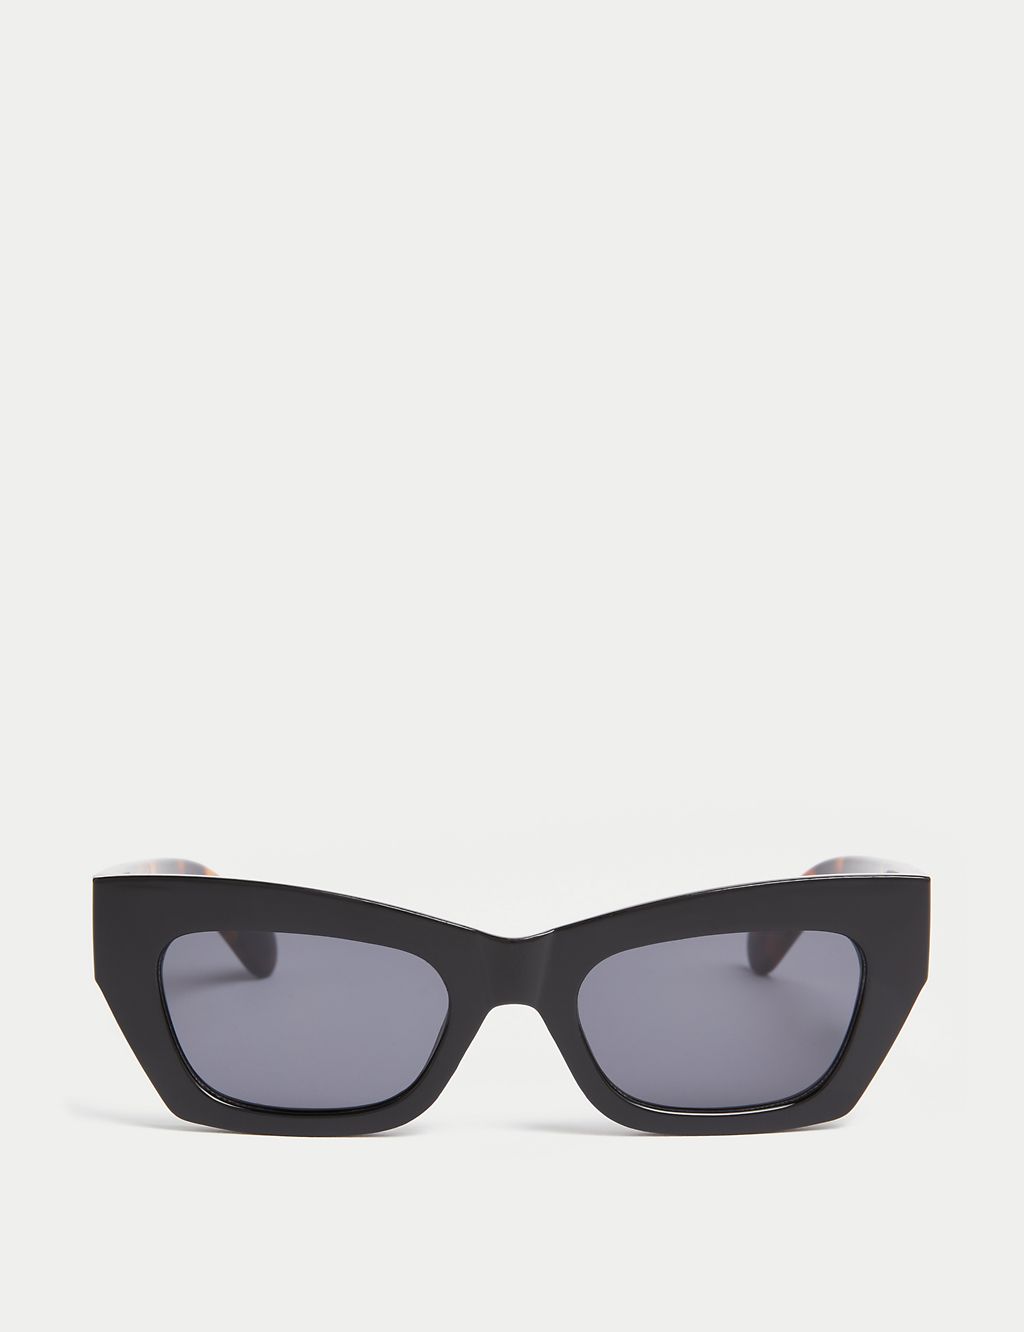 Angular Cat Eye Sunglasses 1 of 2